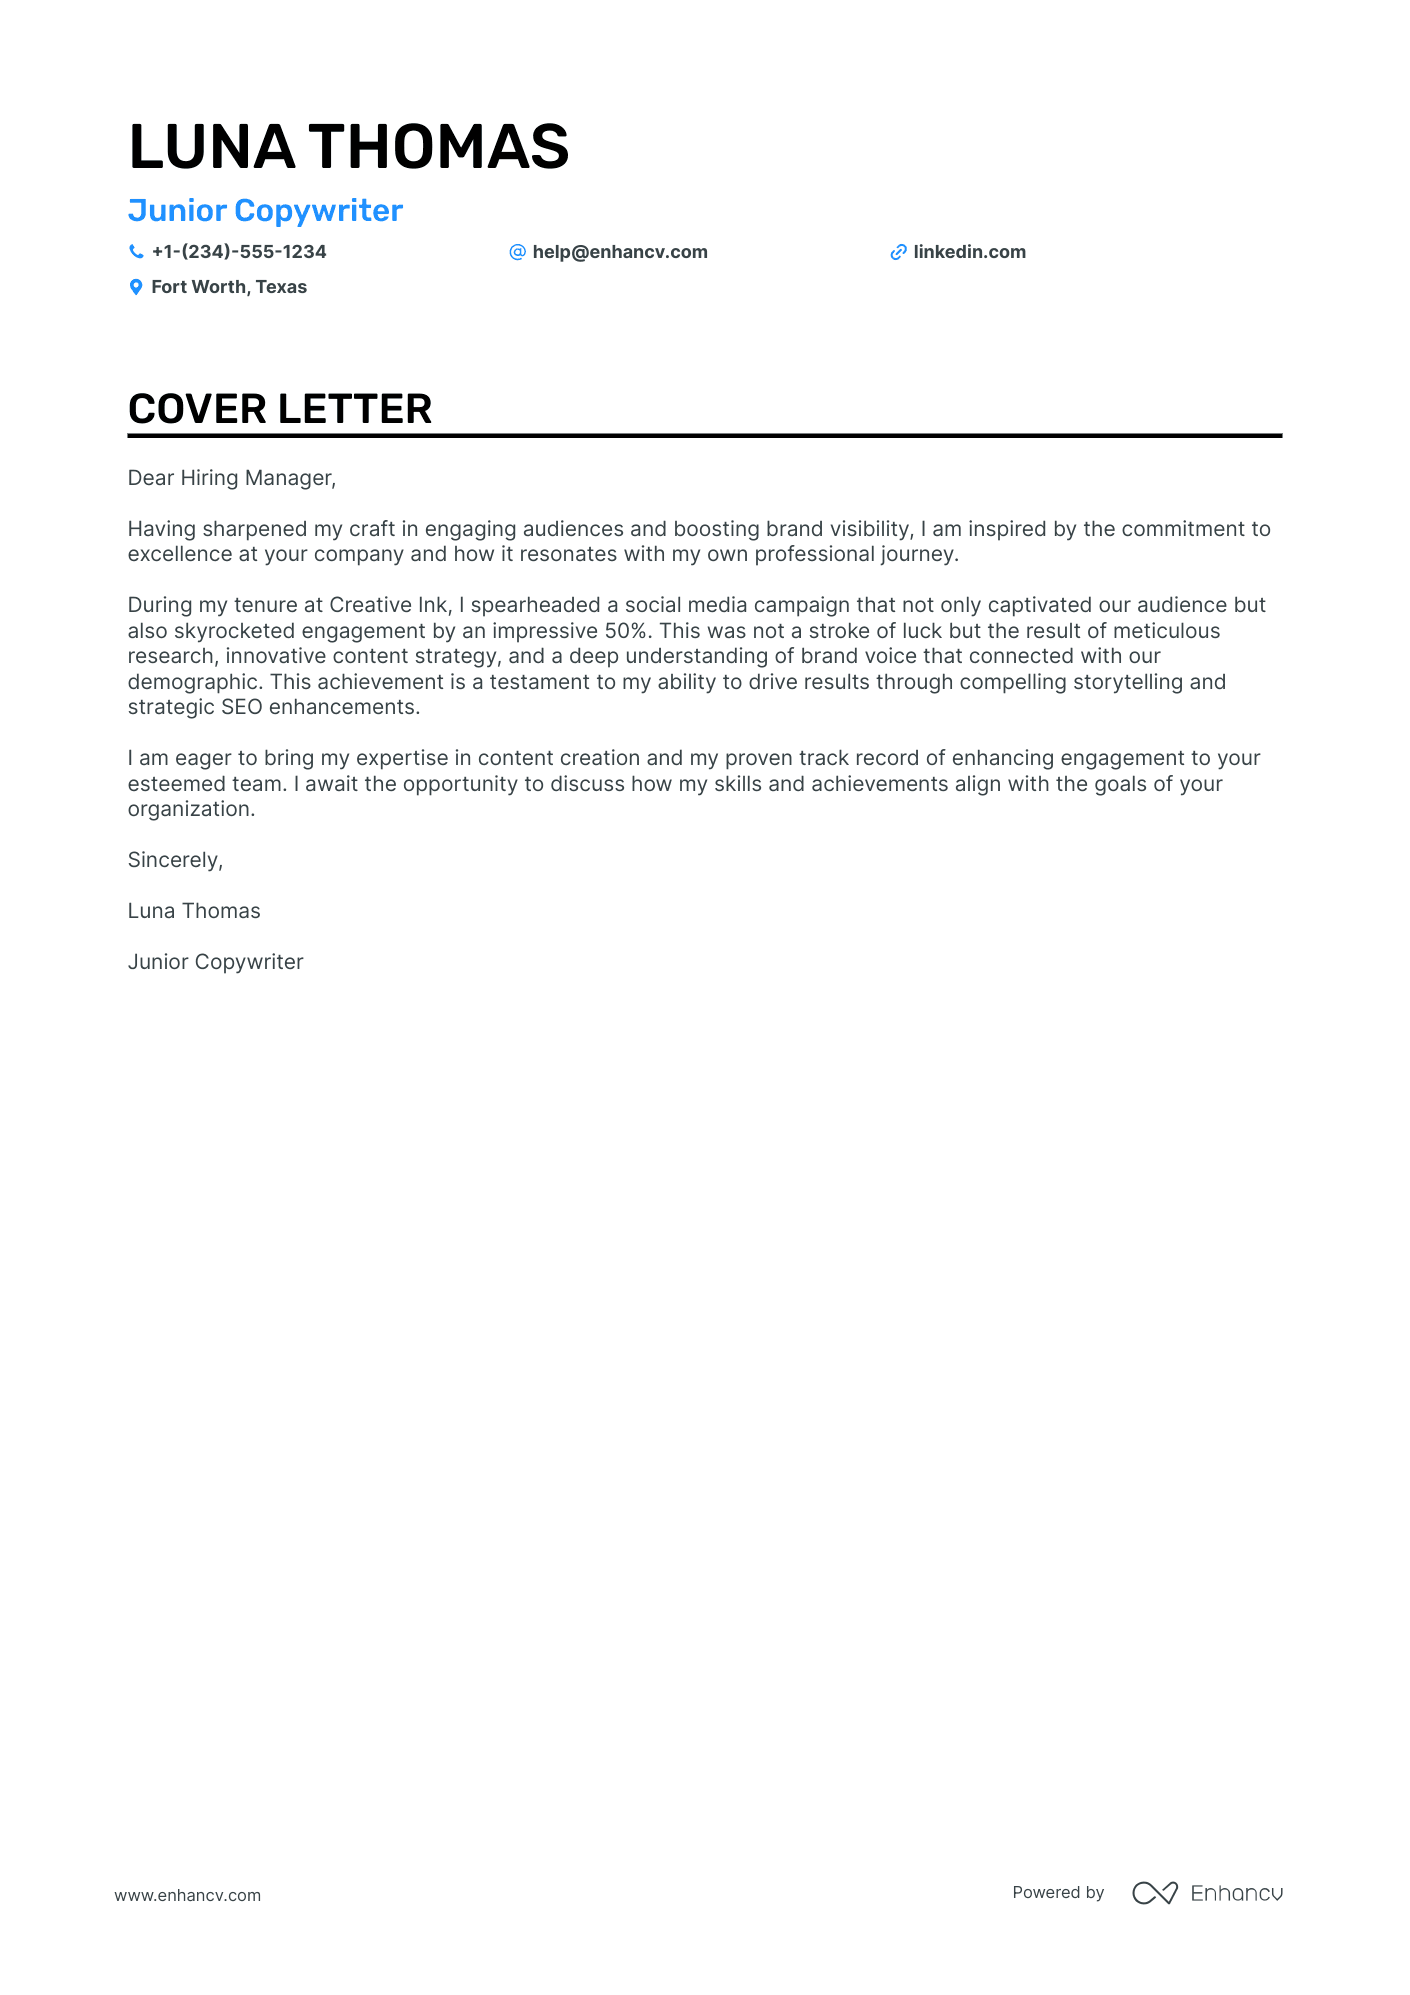 fresher copywriter cover letter